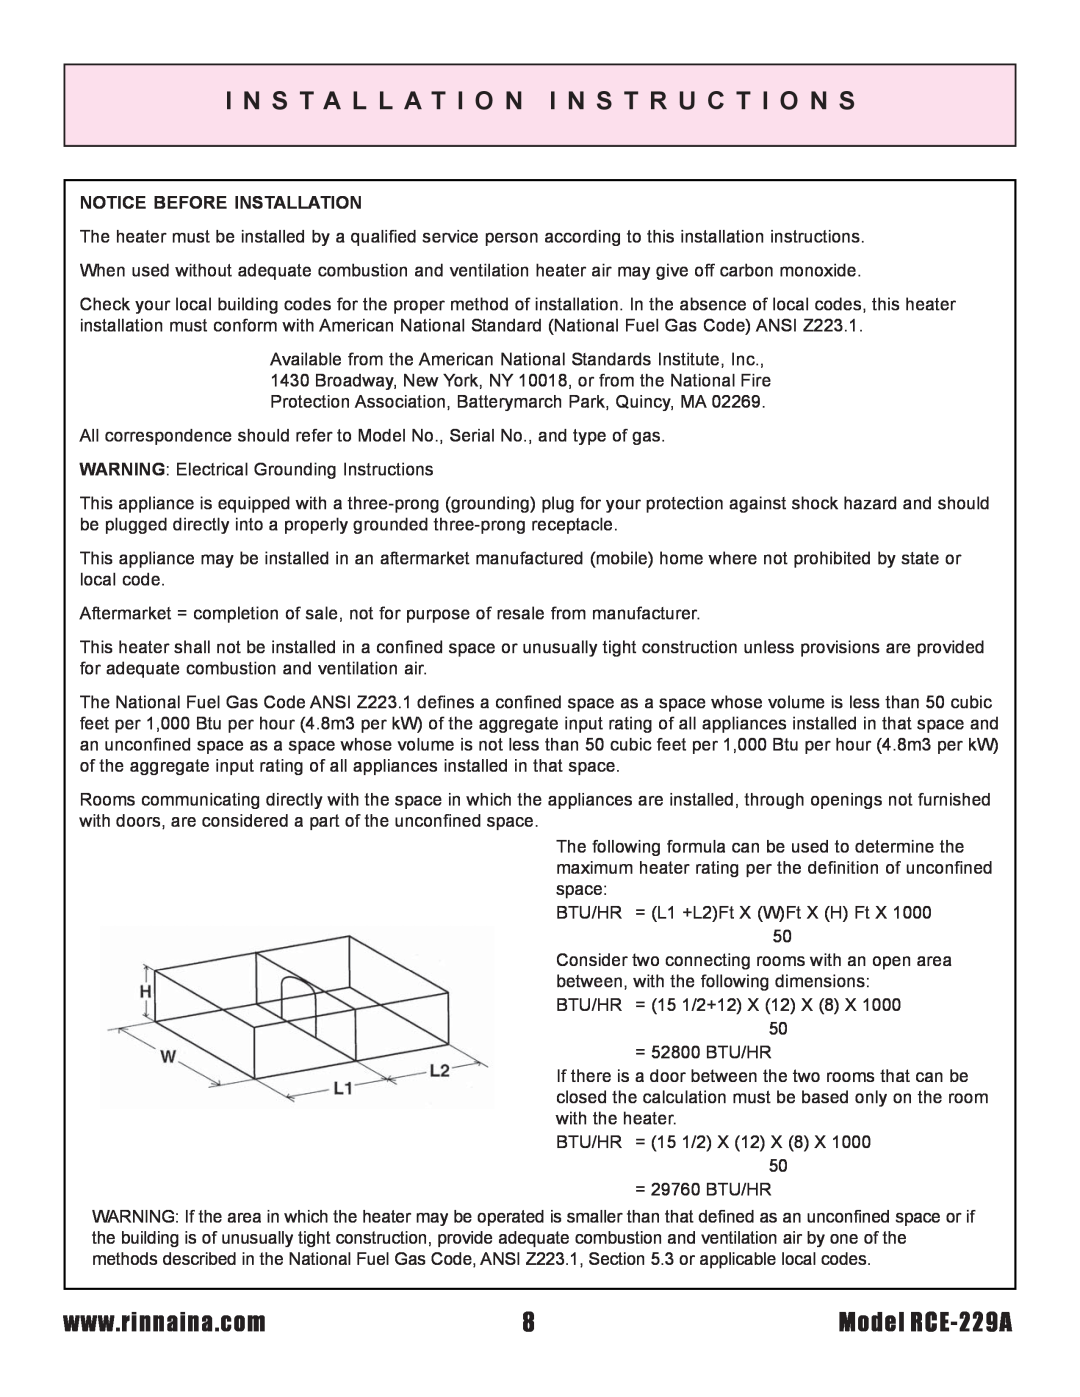 Rinnai installation instructions I N S T A L L A T I O N I N S T R U C T I O N S, Model RCE-229A 